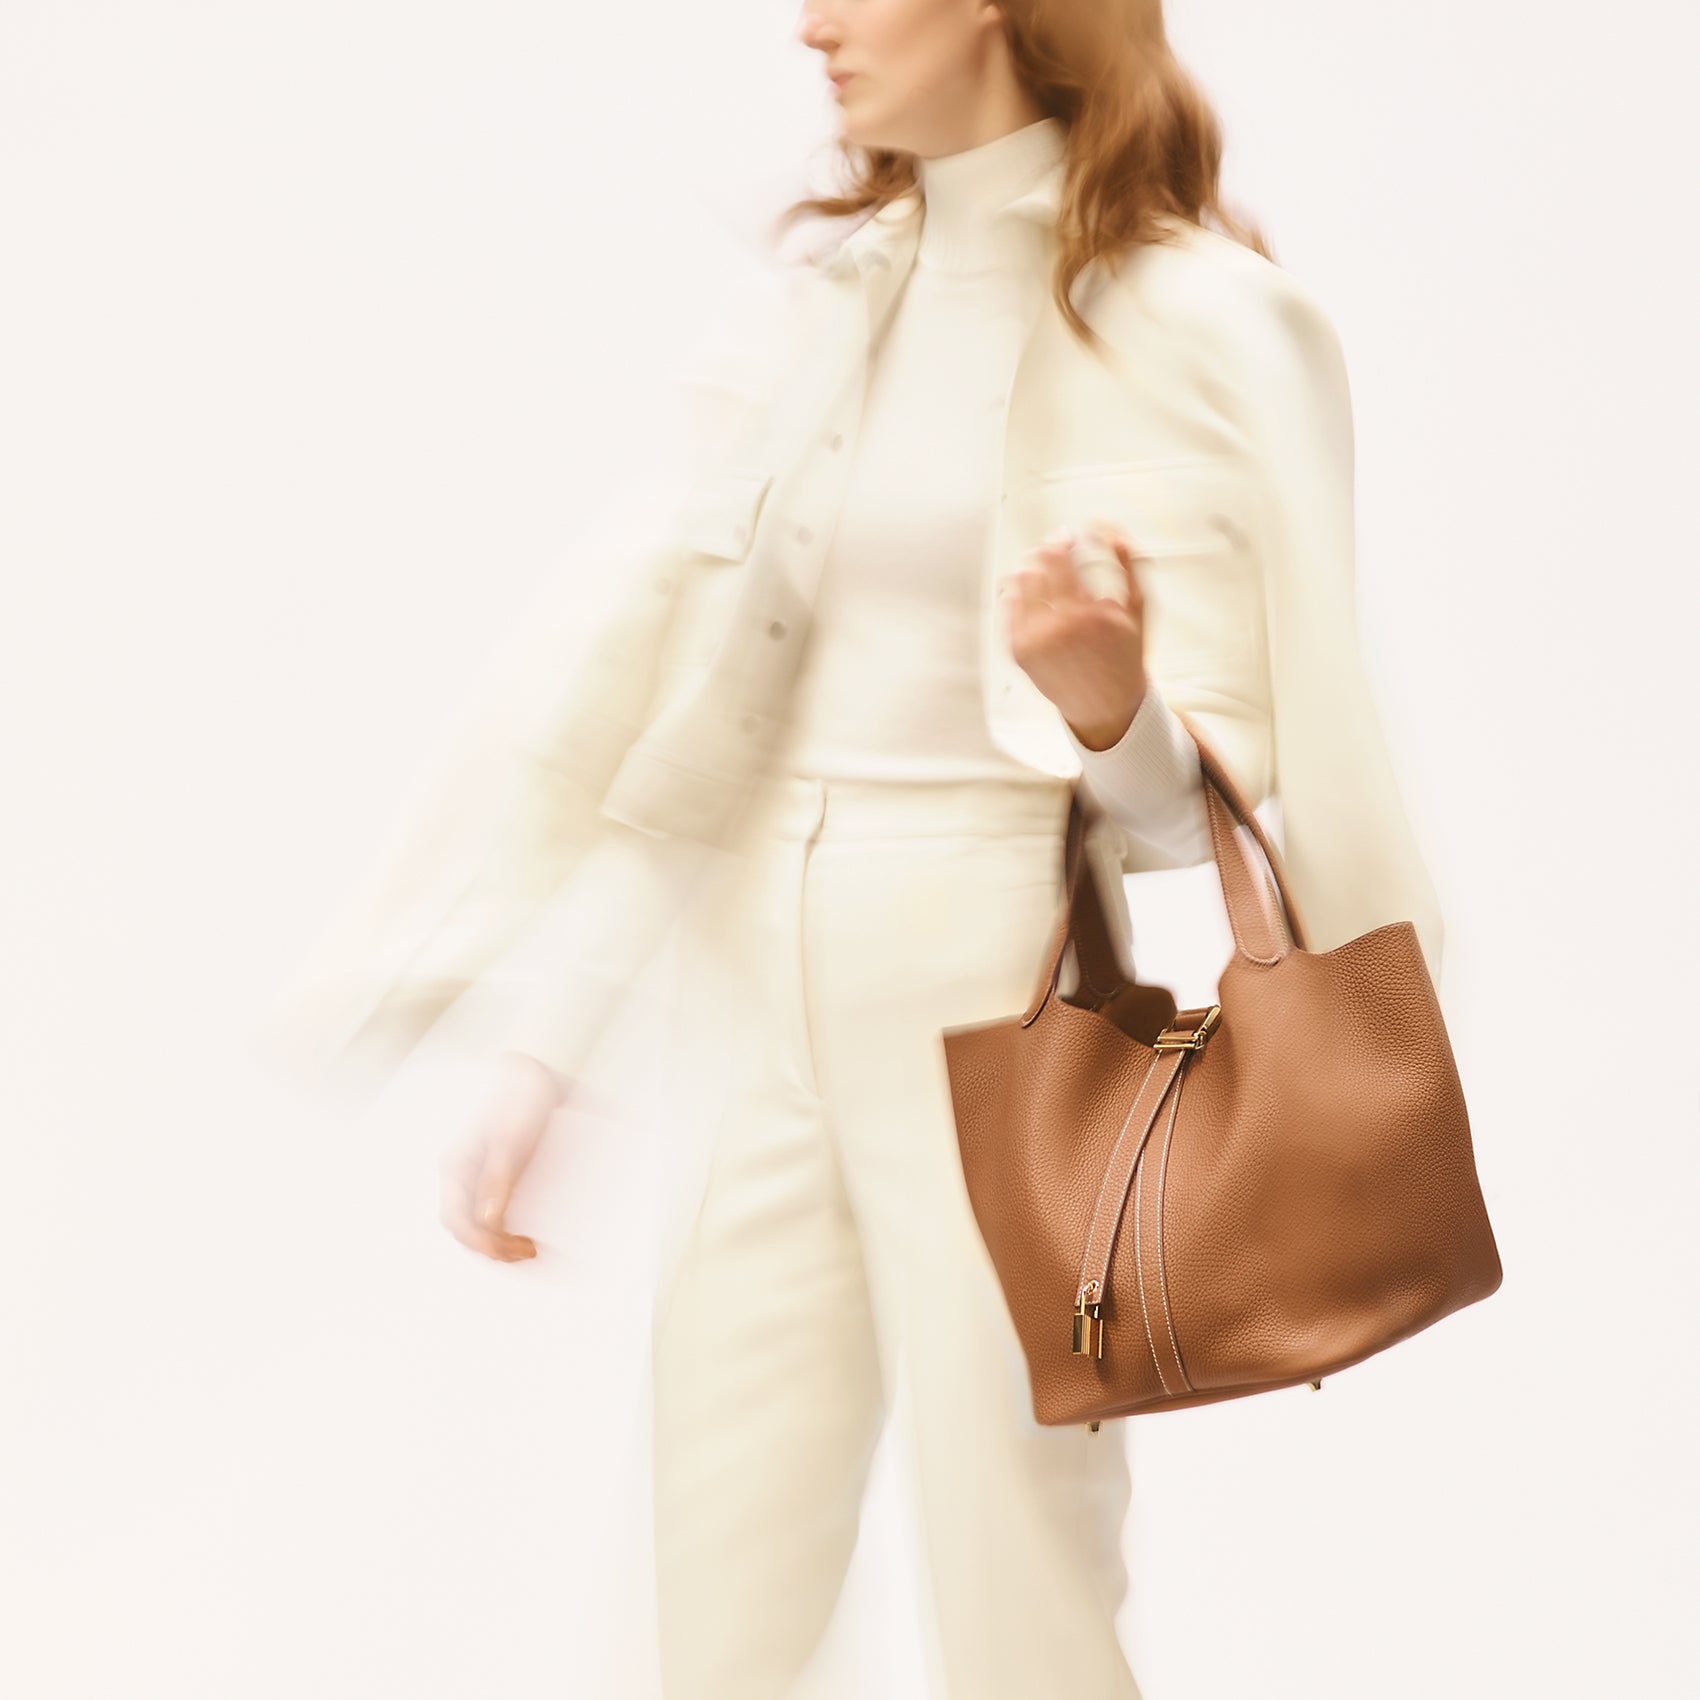 Hermès Picotin Lock 26  Bags, Hermes handbags, Fashion bags